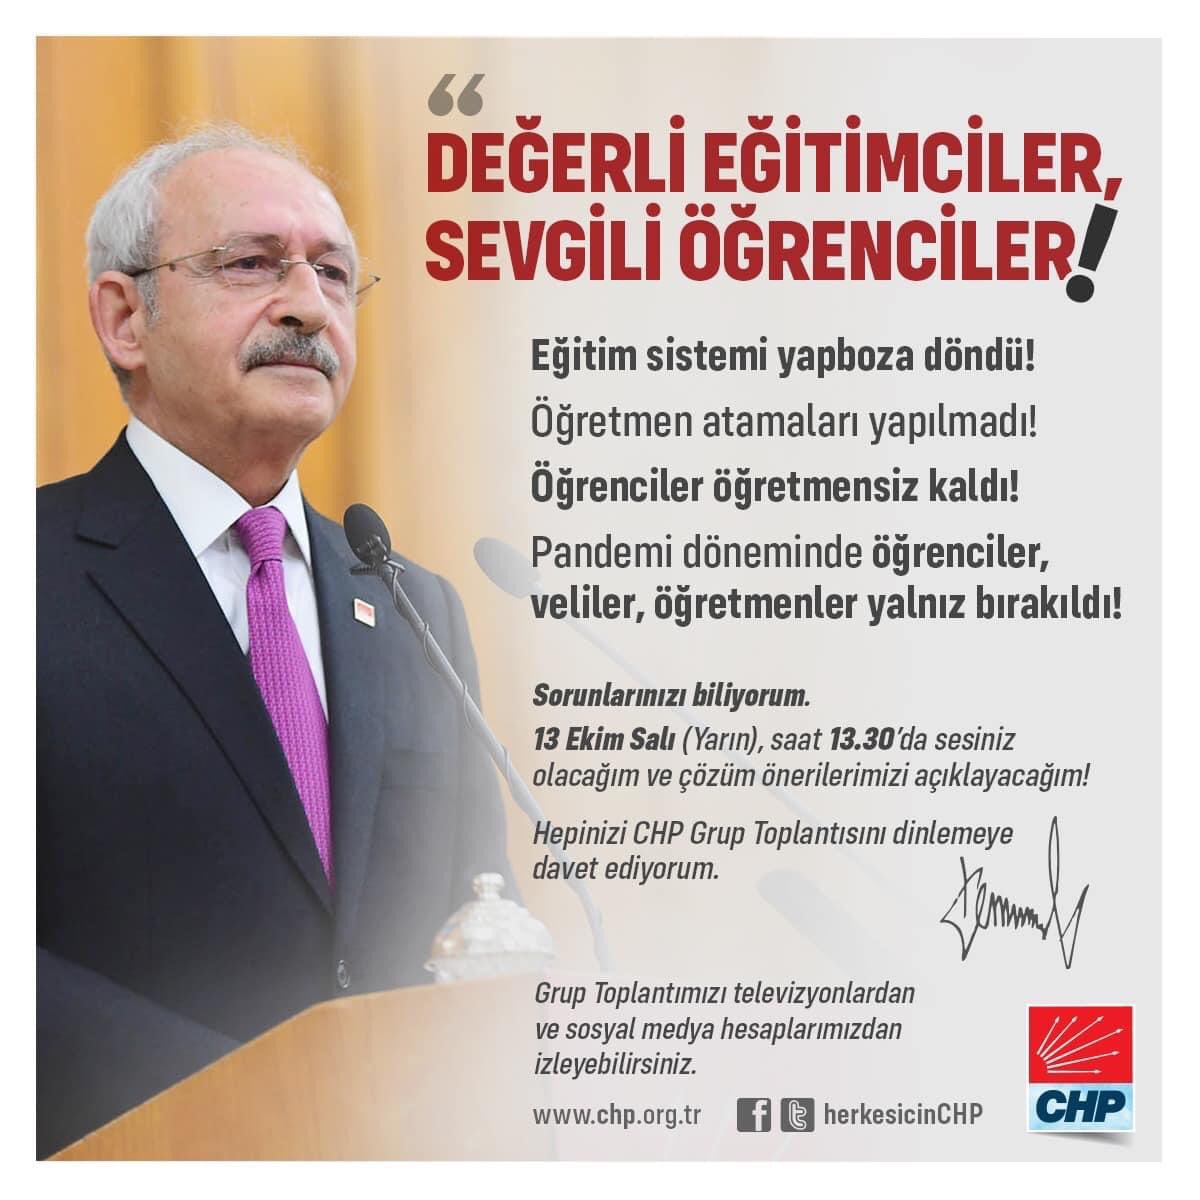 Genel Başkanımız Kemal Kılıçdaroğlu, yarın saat 13:30’da partimizin TBMM Grup Toplantısında eğitim sistemindeki sorunları dile getirecek. Çözüm önerilerimizi açıklayacak.
#eğitimhakkı #fırsateşitsizliği #eğitimeerişim